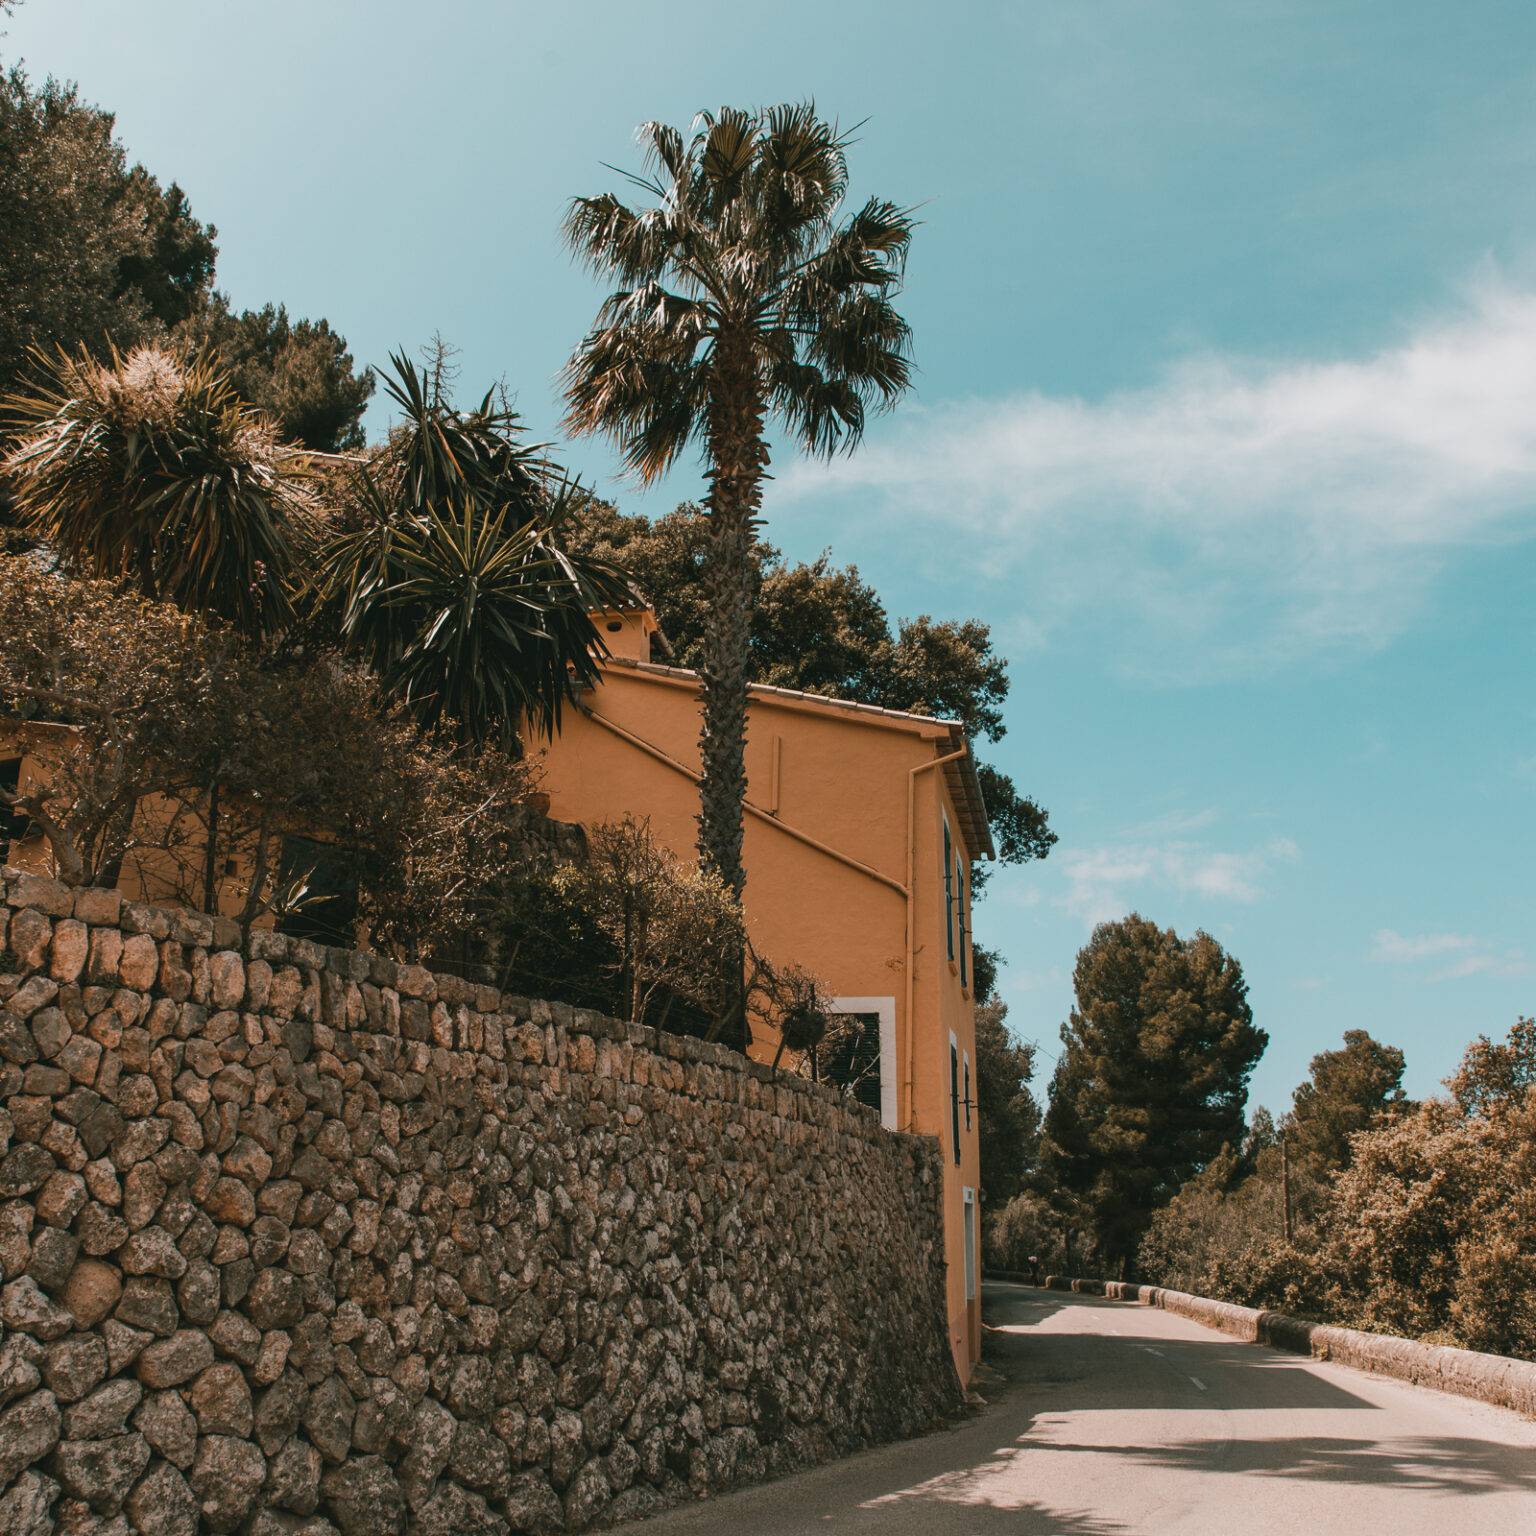 Eine kurvige Straße umgeben von Palmen entlang einer Mauer führt in das Dorf Deià auf Mallorca.